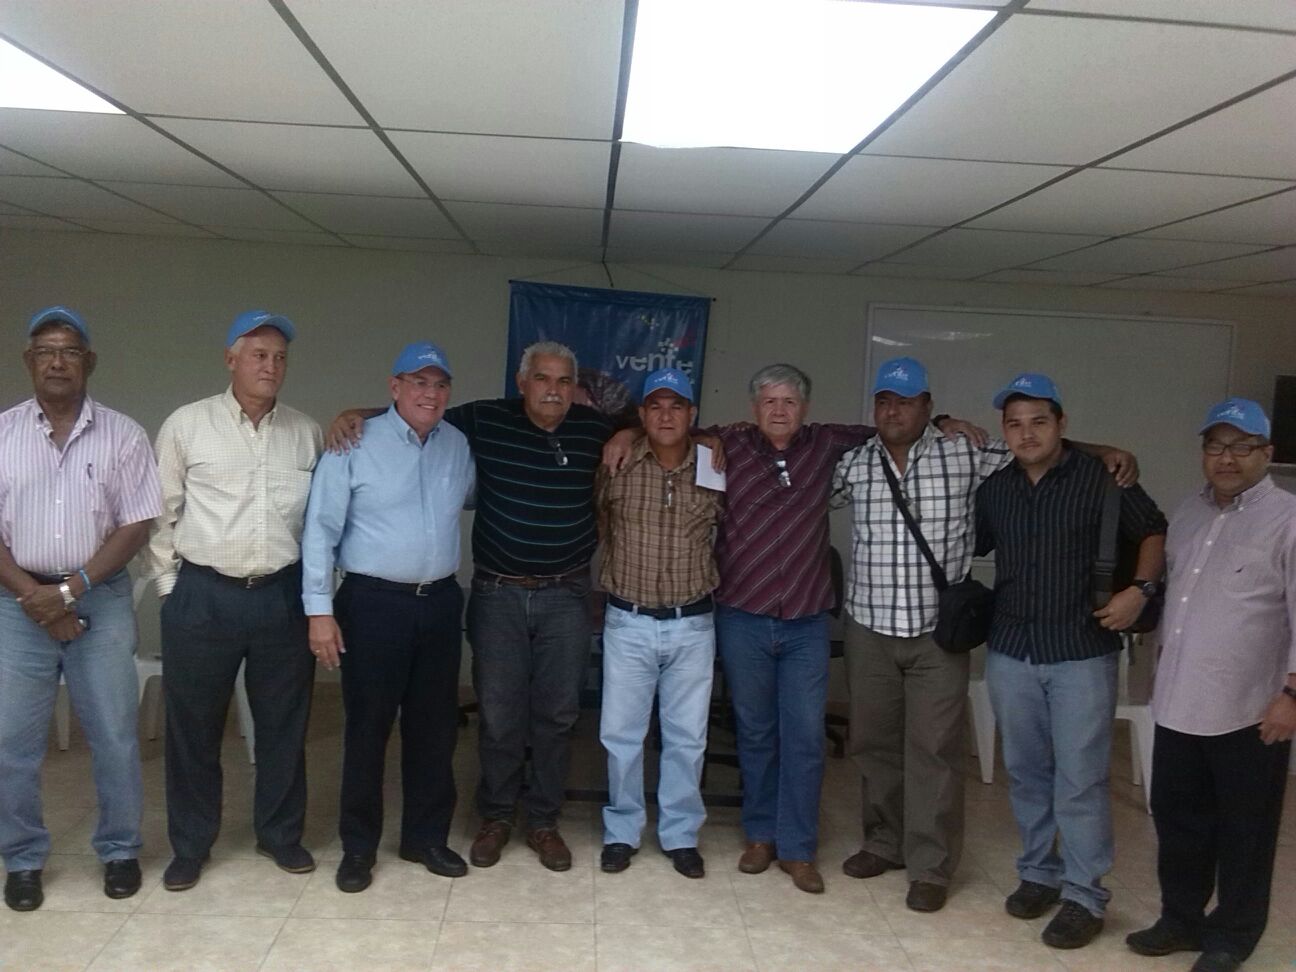 Dirigentes del MAS se suman a Vente Venezuela en Anzoátegui